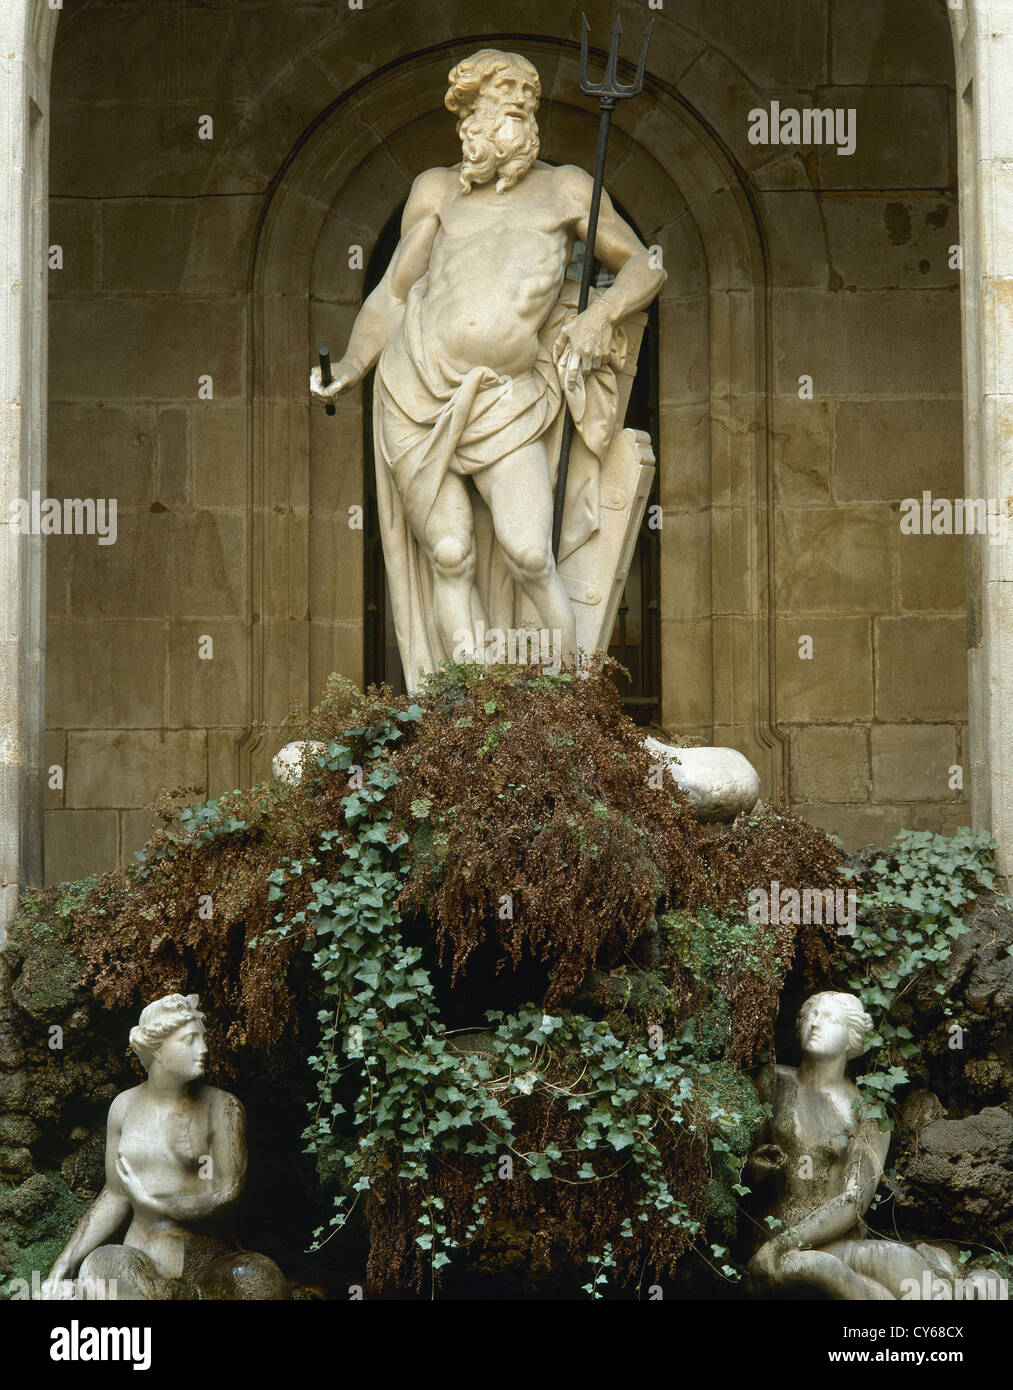 Spanien. Barcelona. Statue von Neptun durch Nicolau Trave. 18. Jahrhundert. Klassizistischen Stil. Brunnen. La Llotja. Stockfoto